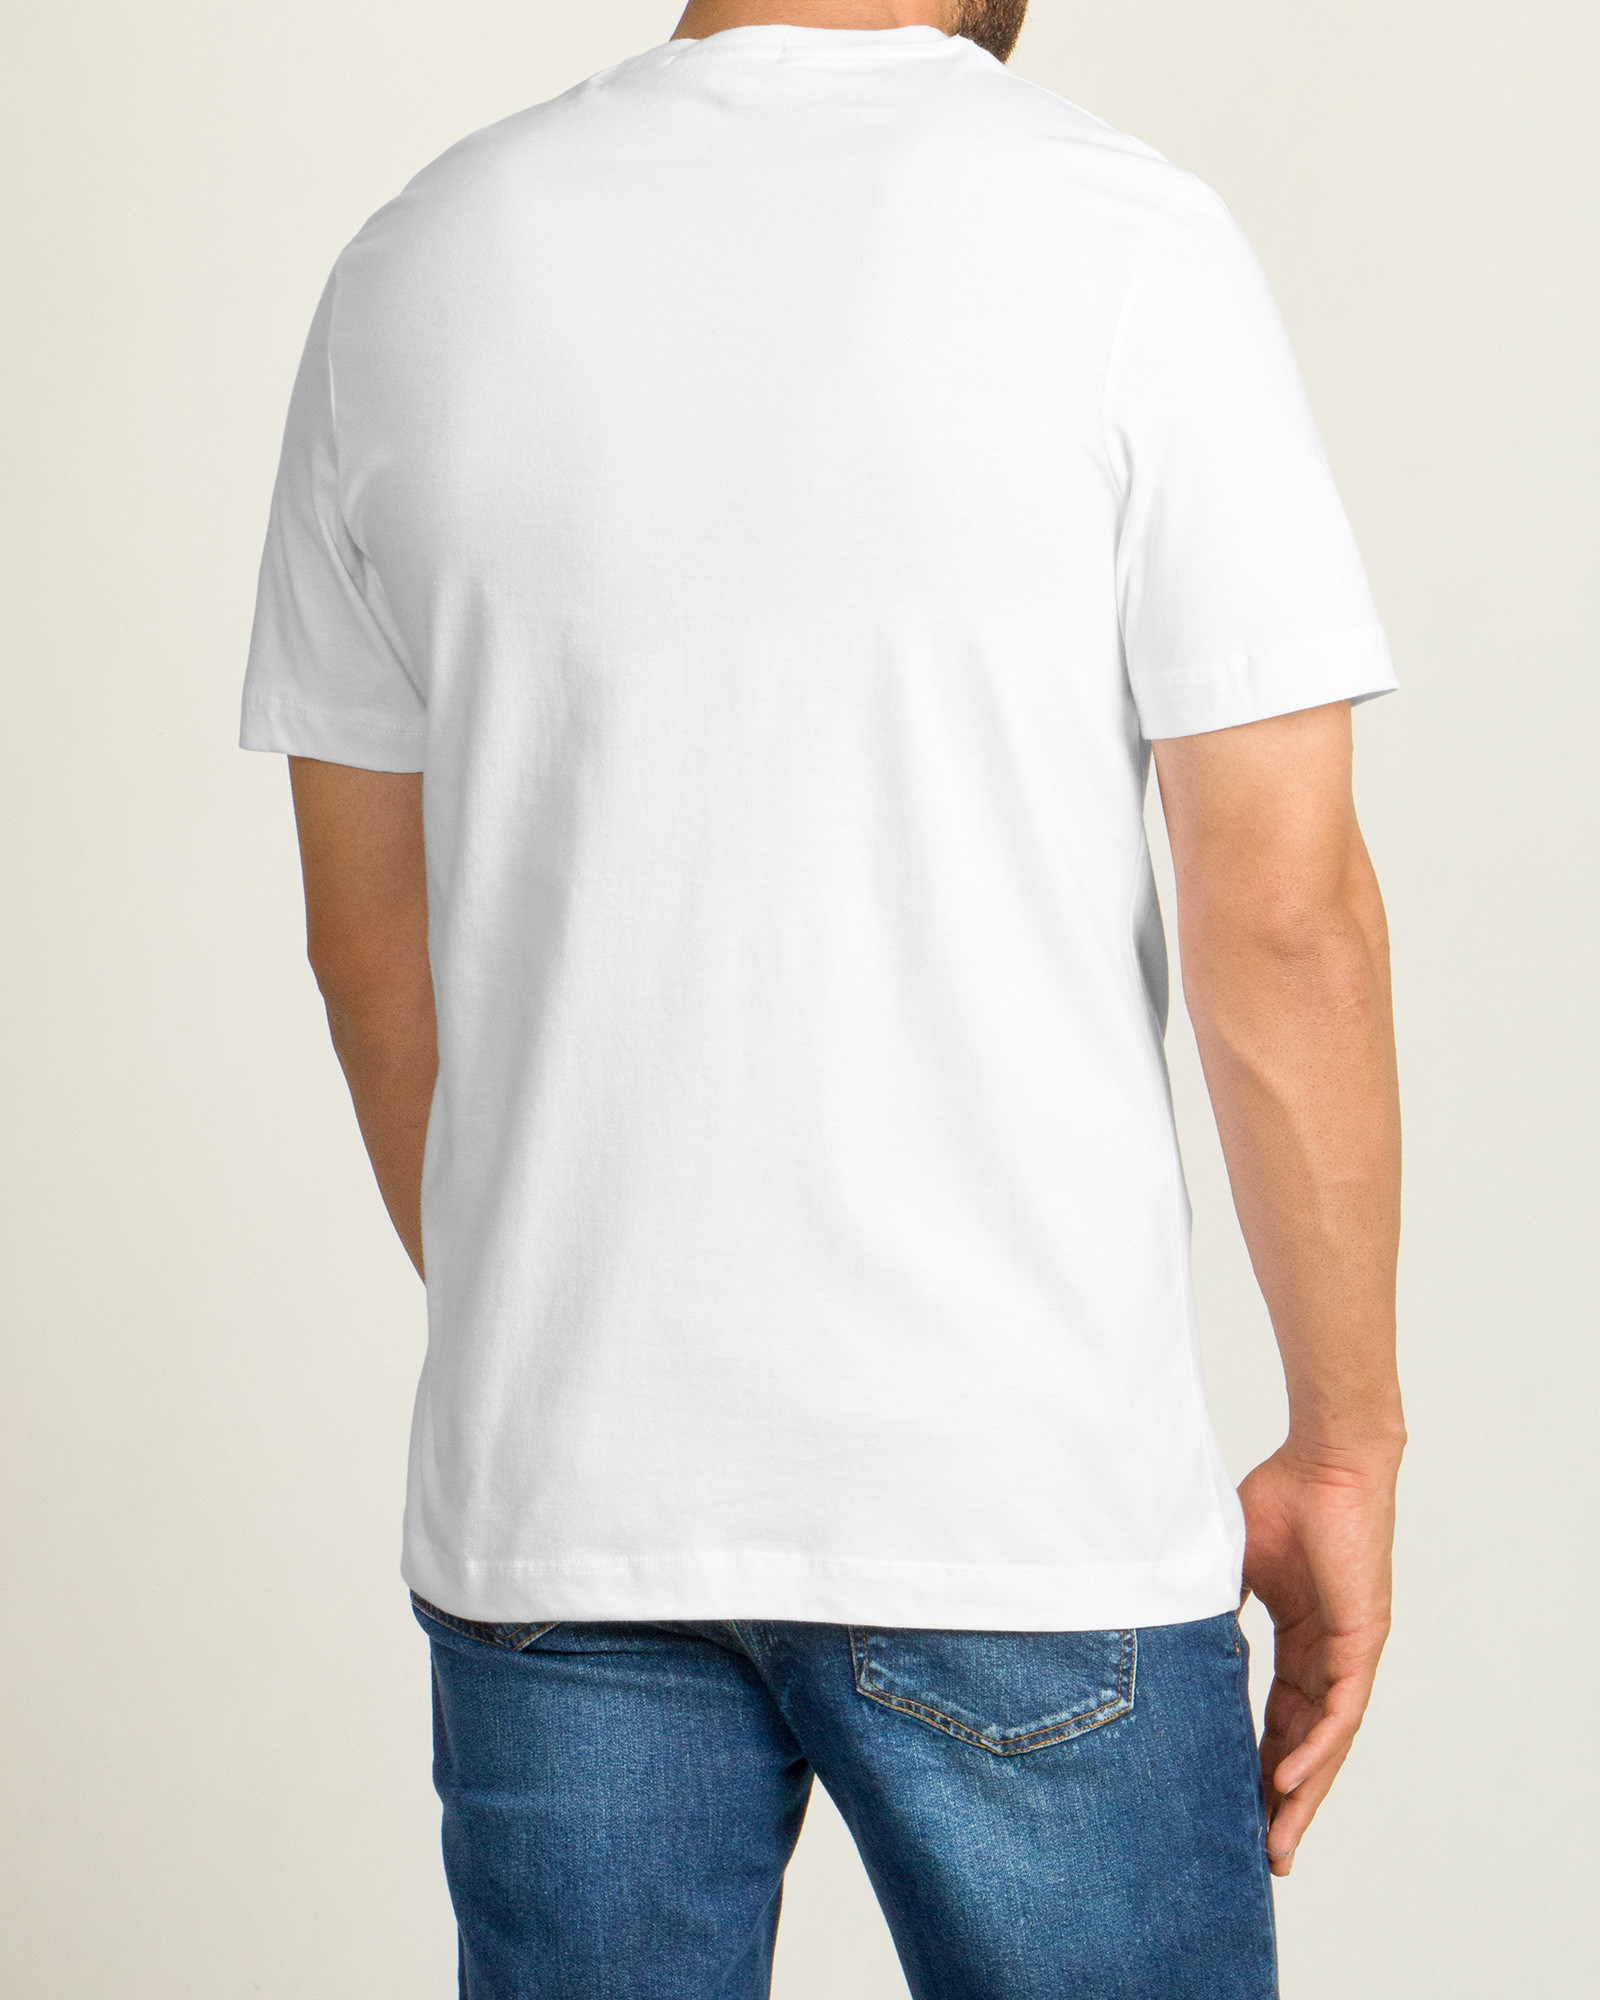 خرید تیشرت آستین کوتاه مردانه چاپ برجسته سفید 20196127